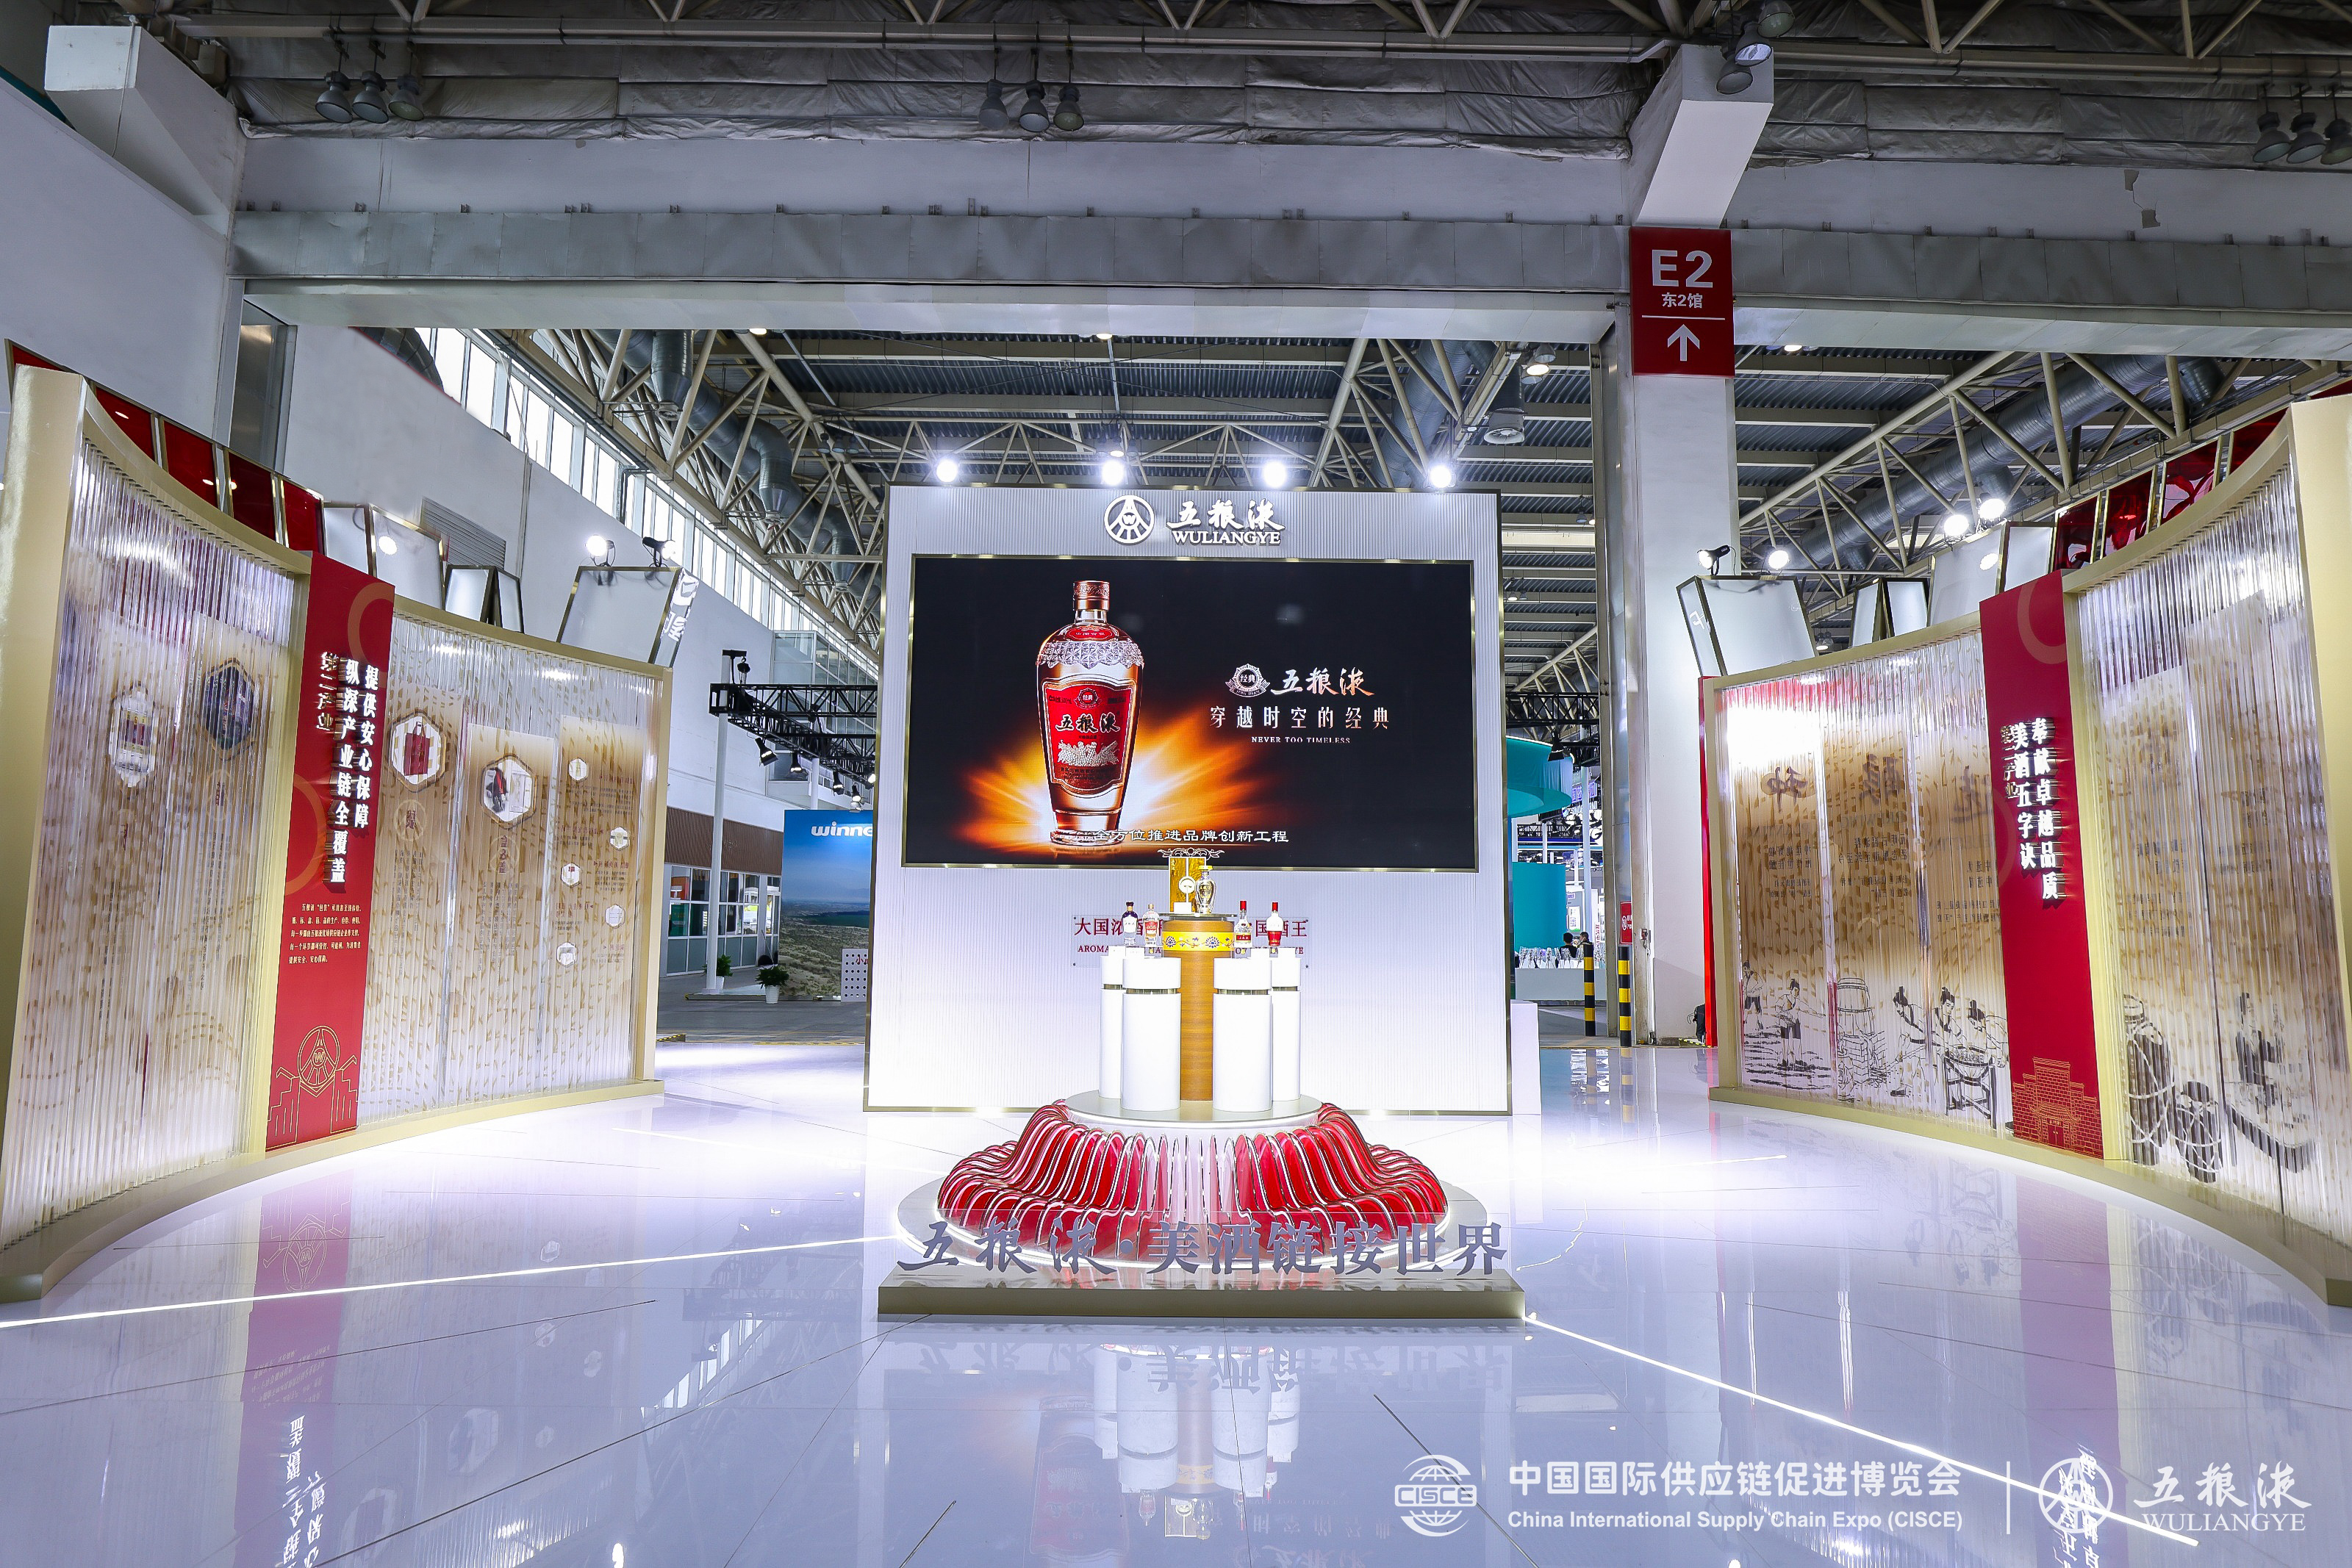 以和美链接世界 五粮液精彩亮相首届中国国际供应链促进博览会